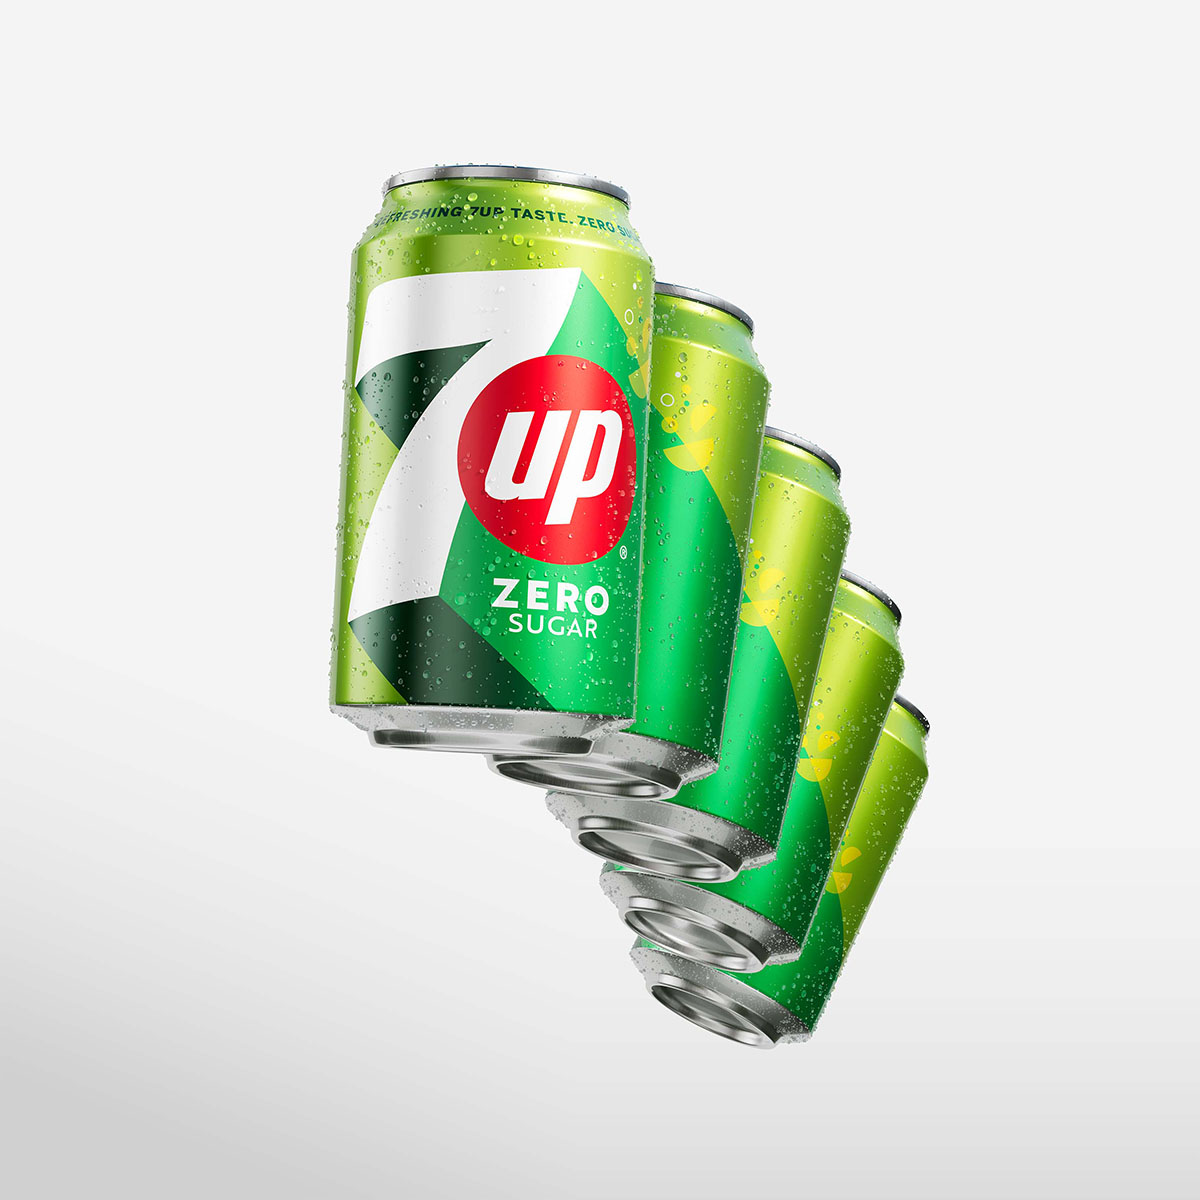 7UP Global Brand Restage